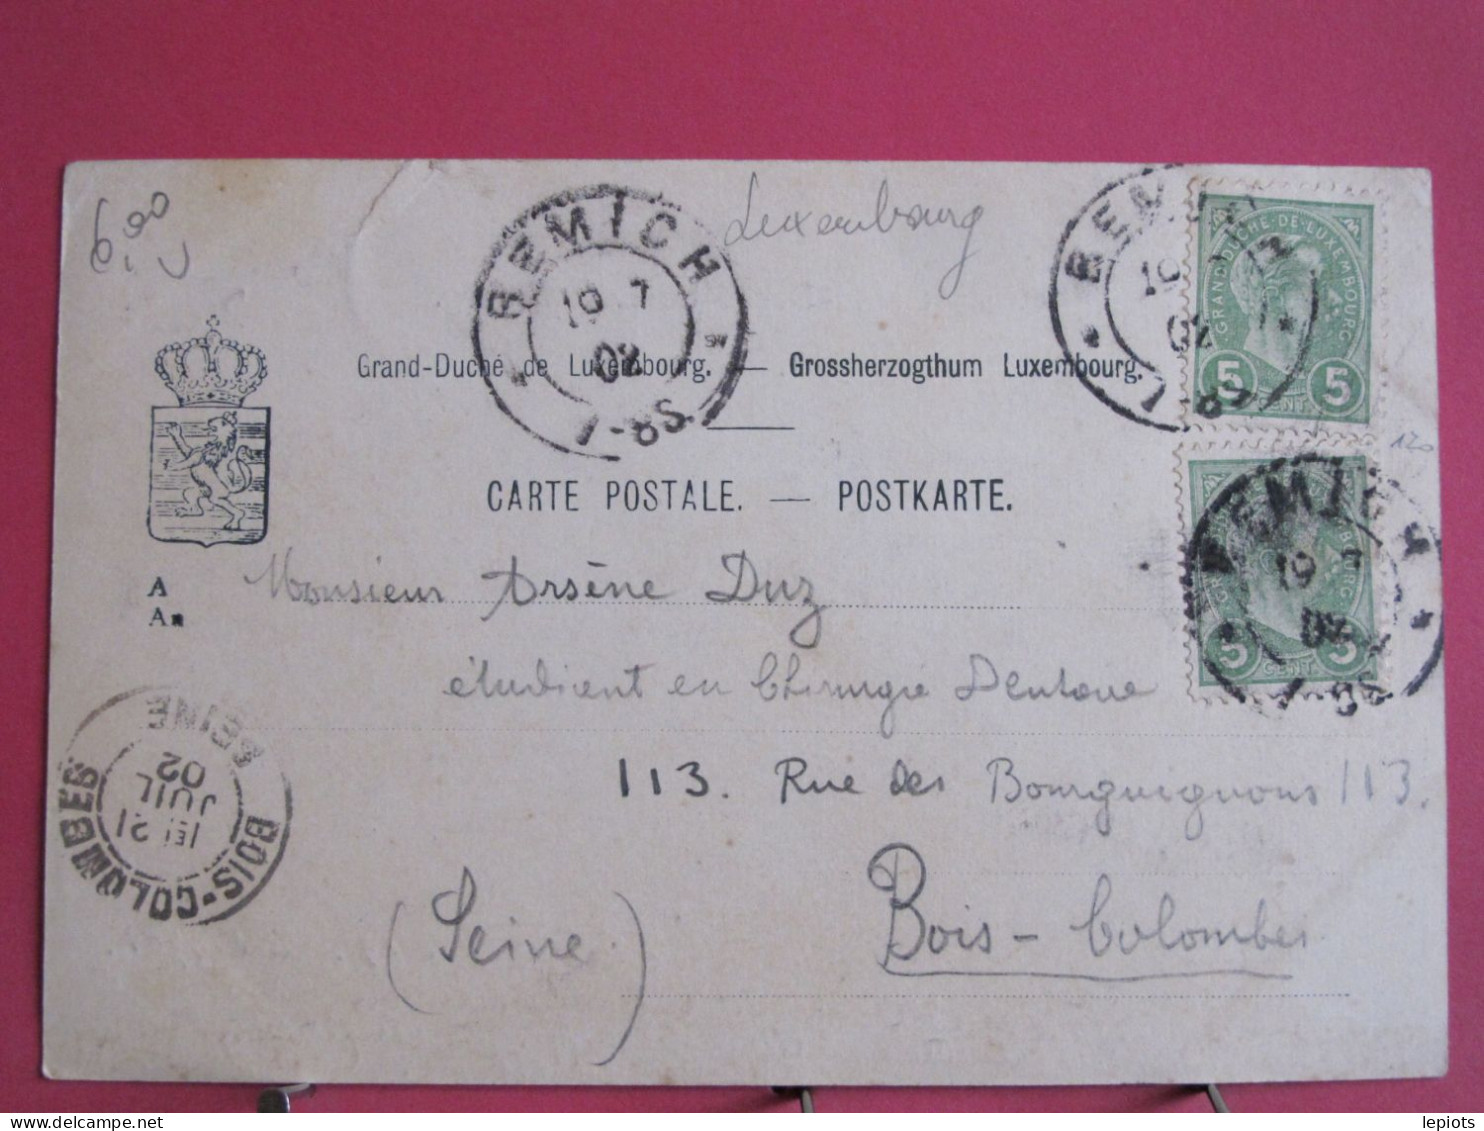 Visuel Très Peu Courant - Luxembourg - Stadtbredimus S. Moselle - CPA Précurseur 1902 - Jolis Timbres - Remich